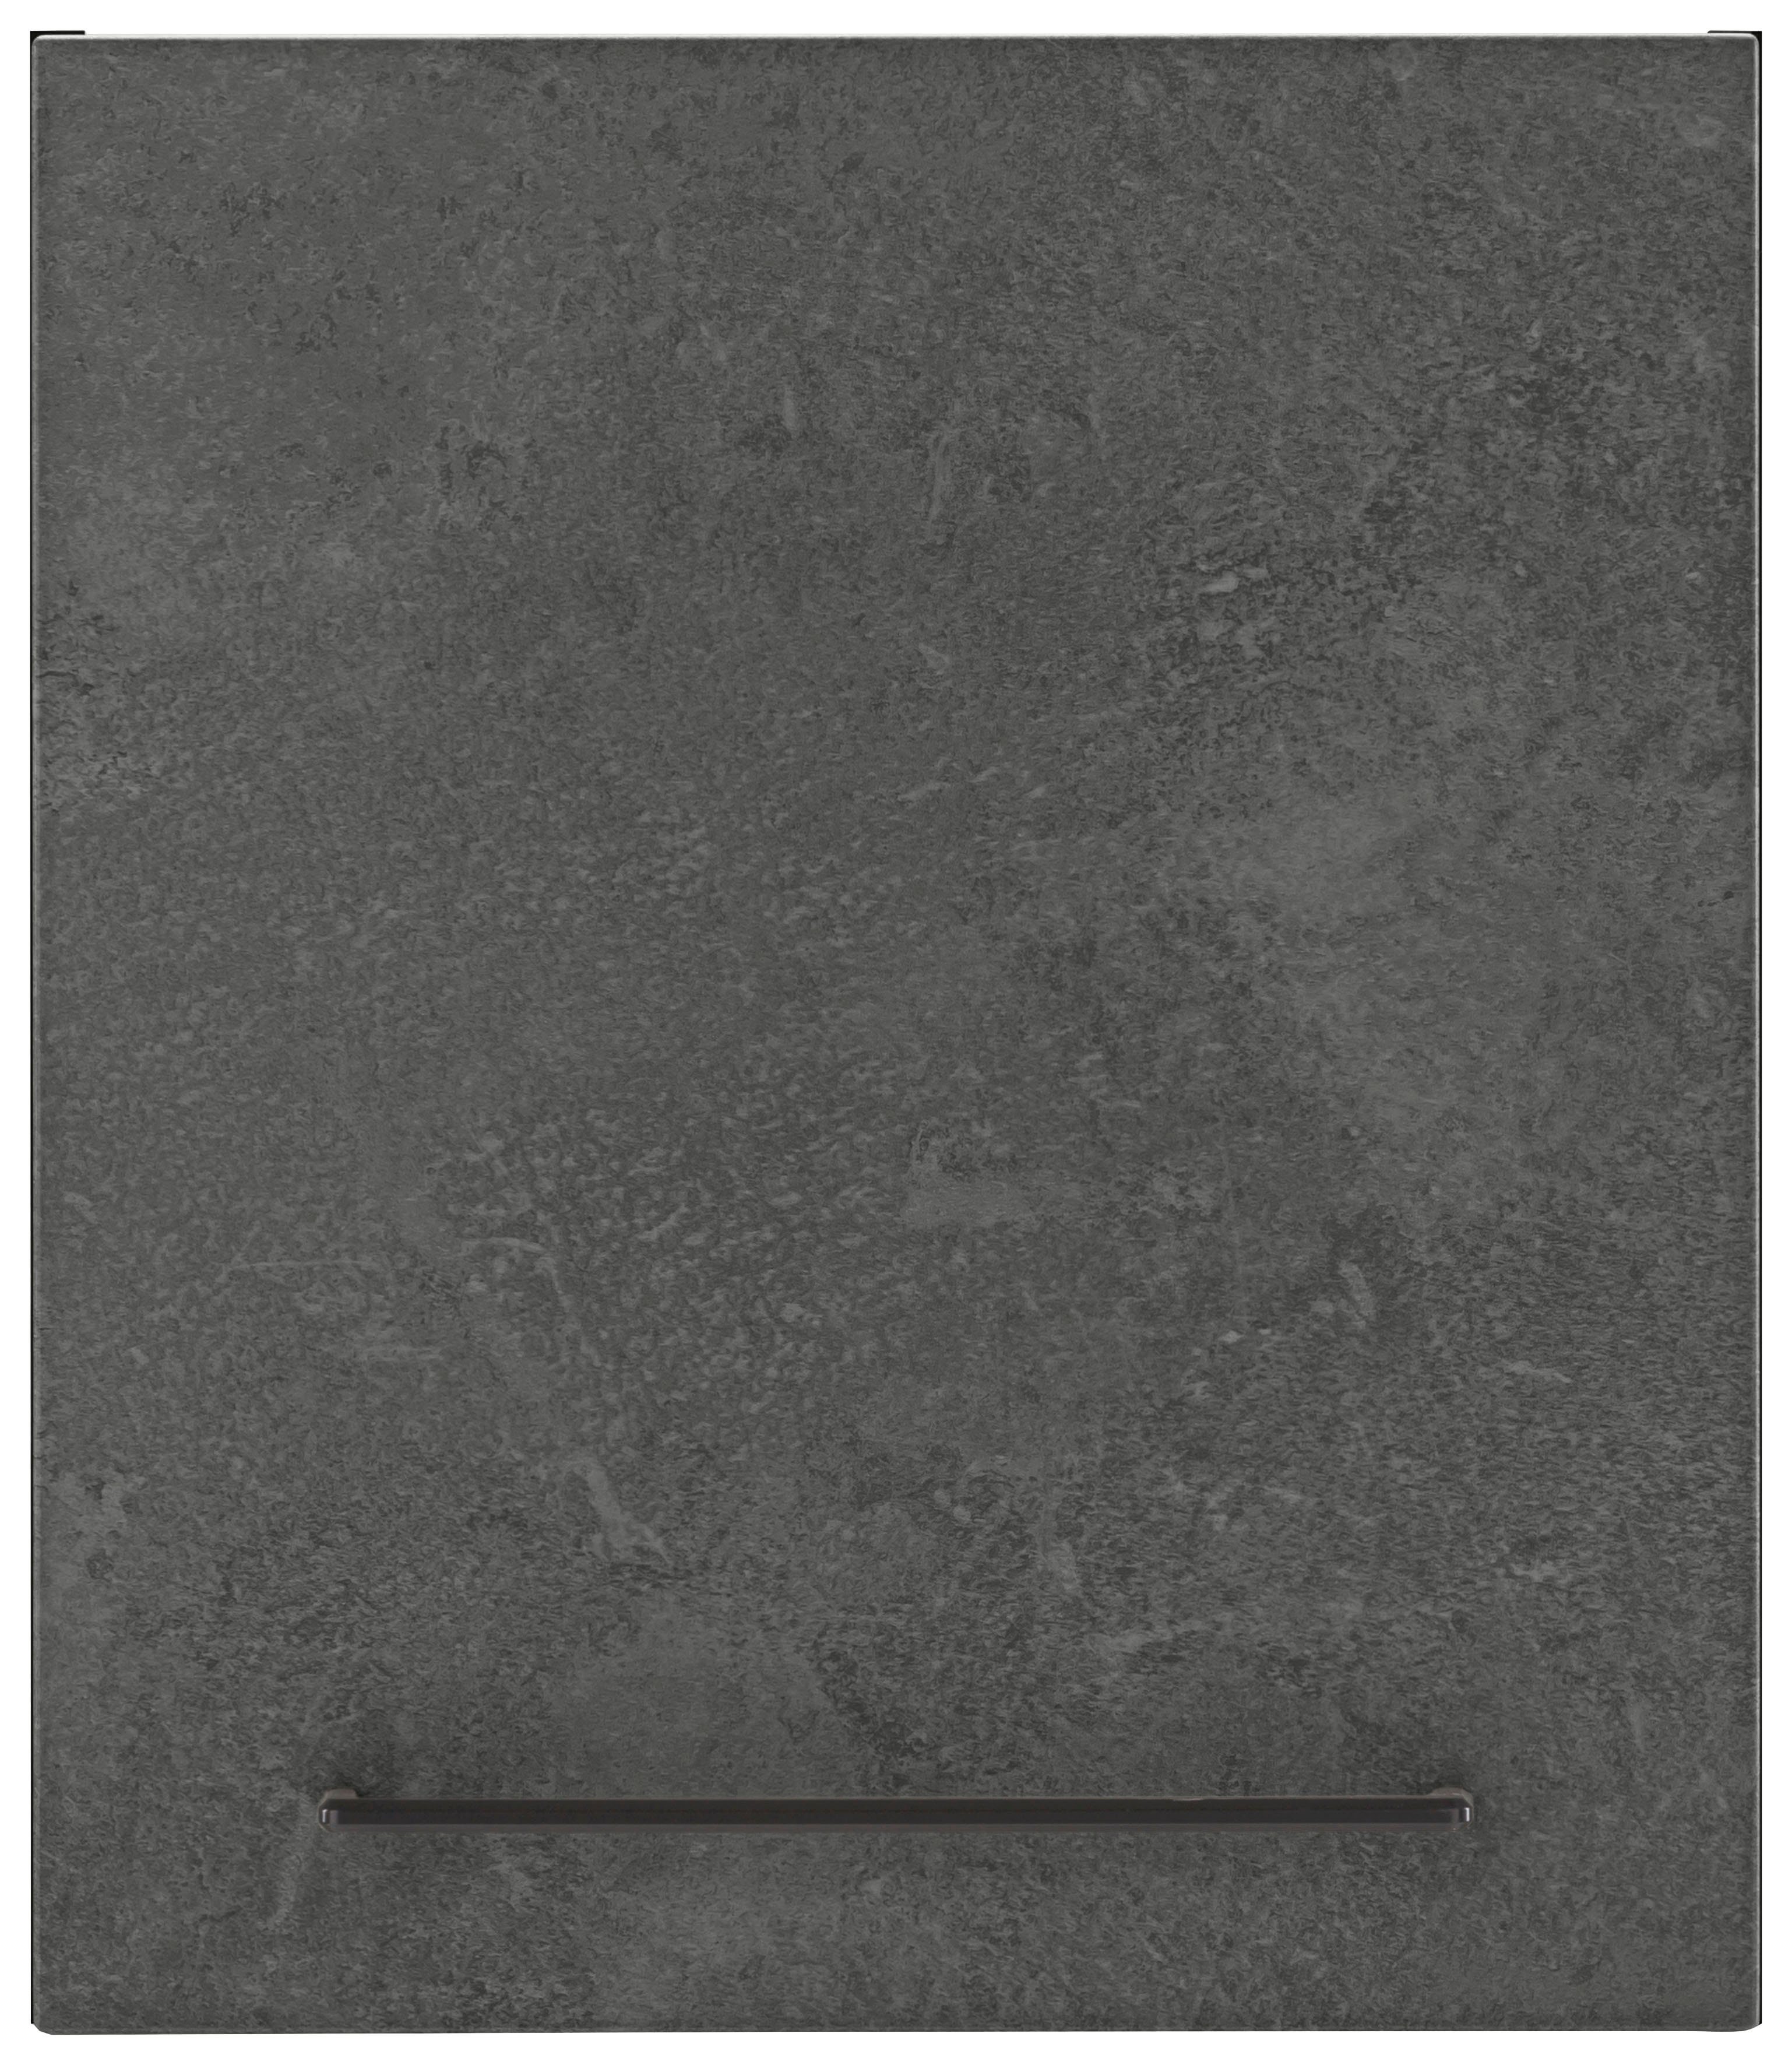 HELD MÖBEL Hängeschrank Tulsa 50 cm breit, 57 cm hoch, 1 Tür, schwarzer Metallgriff, MDF Front betonfarben dunkel | grafit